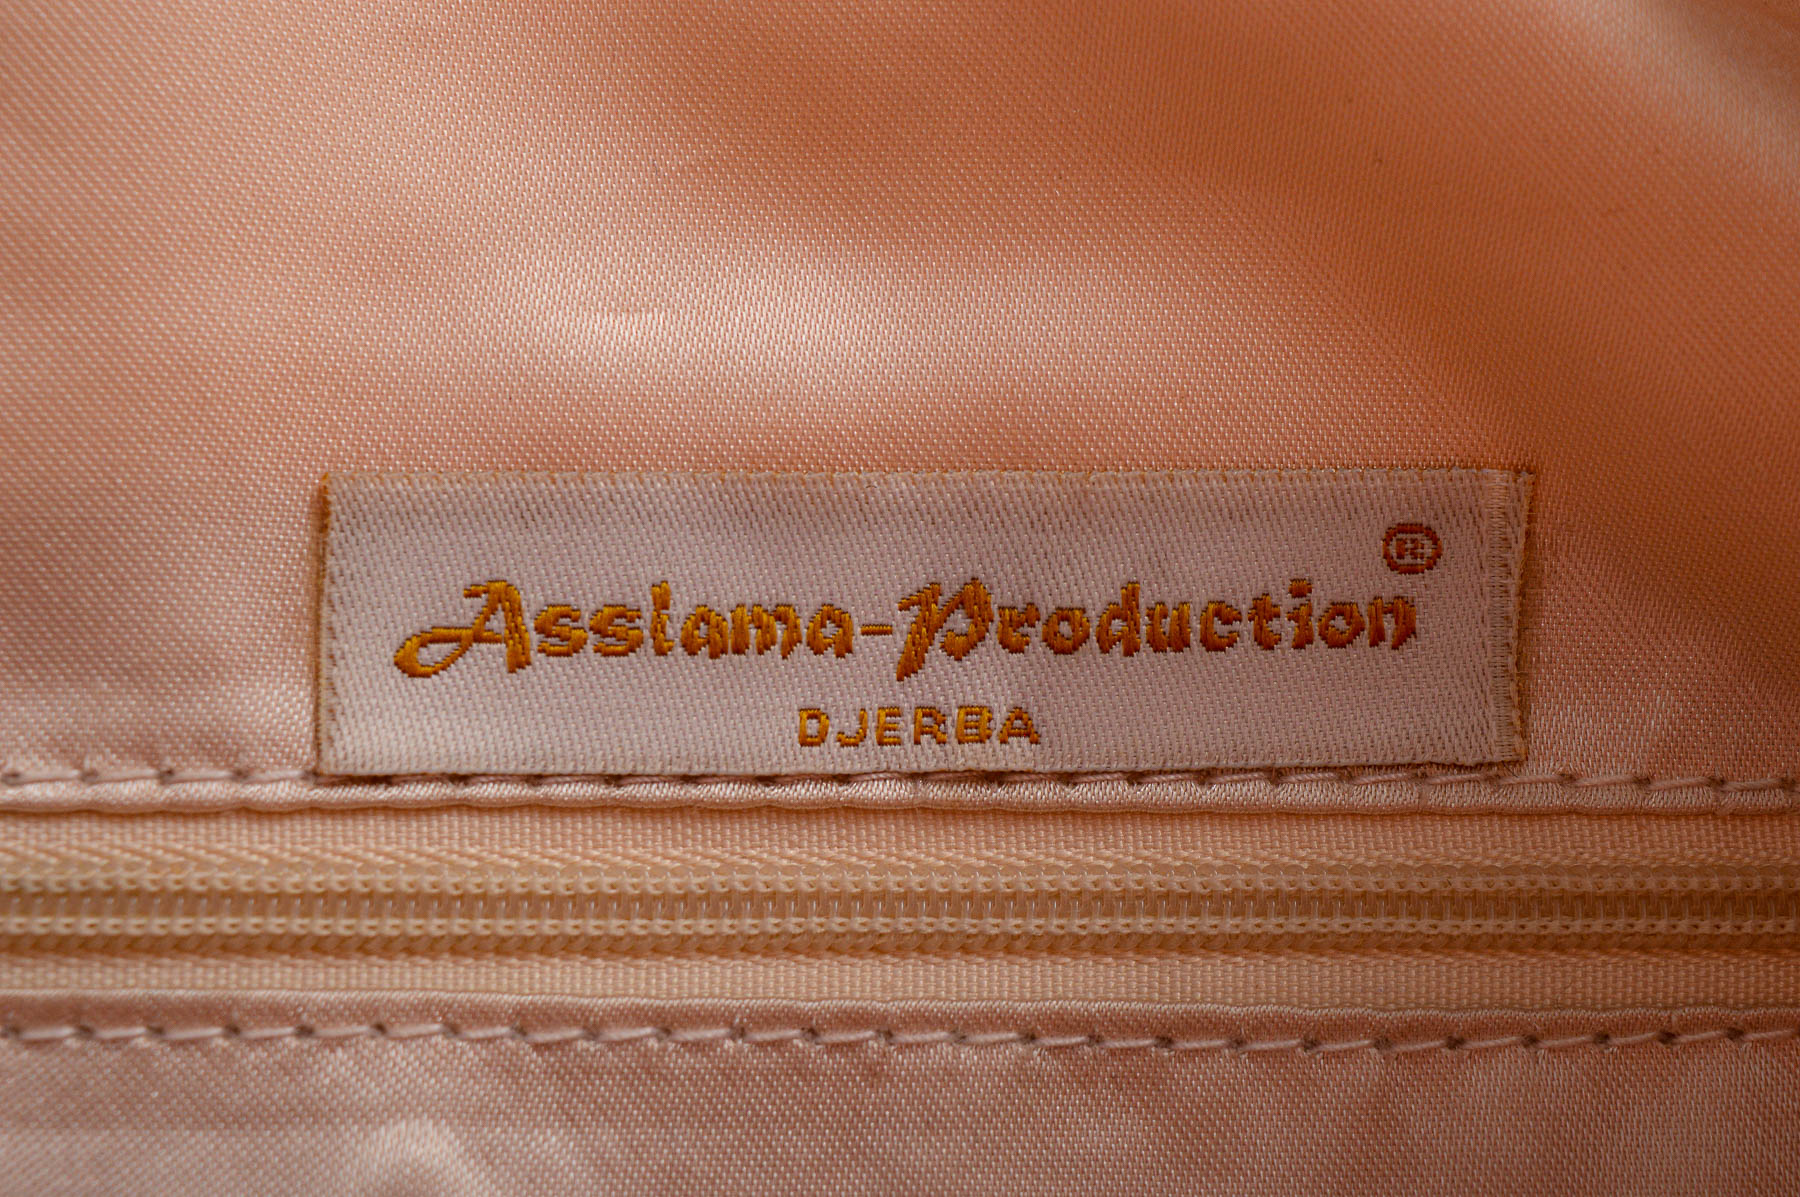 Coș de cumpărături - Assiama - Production - 3